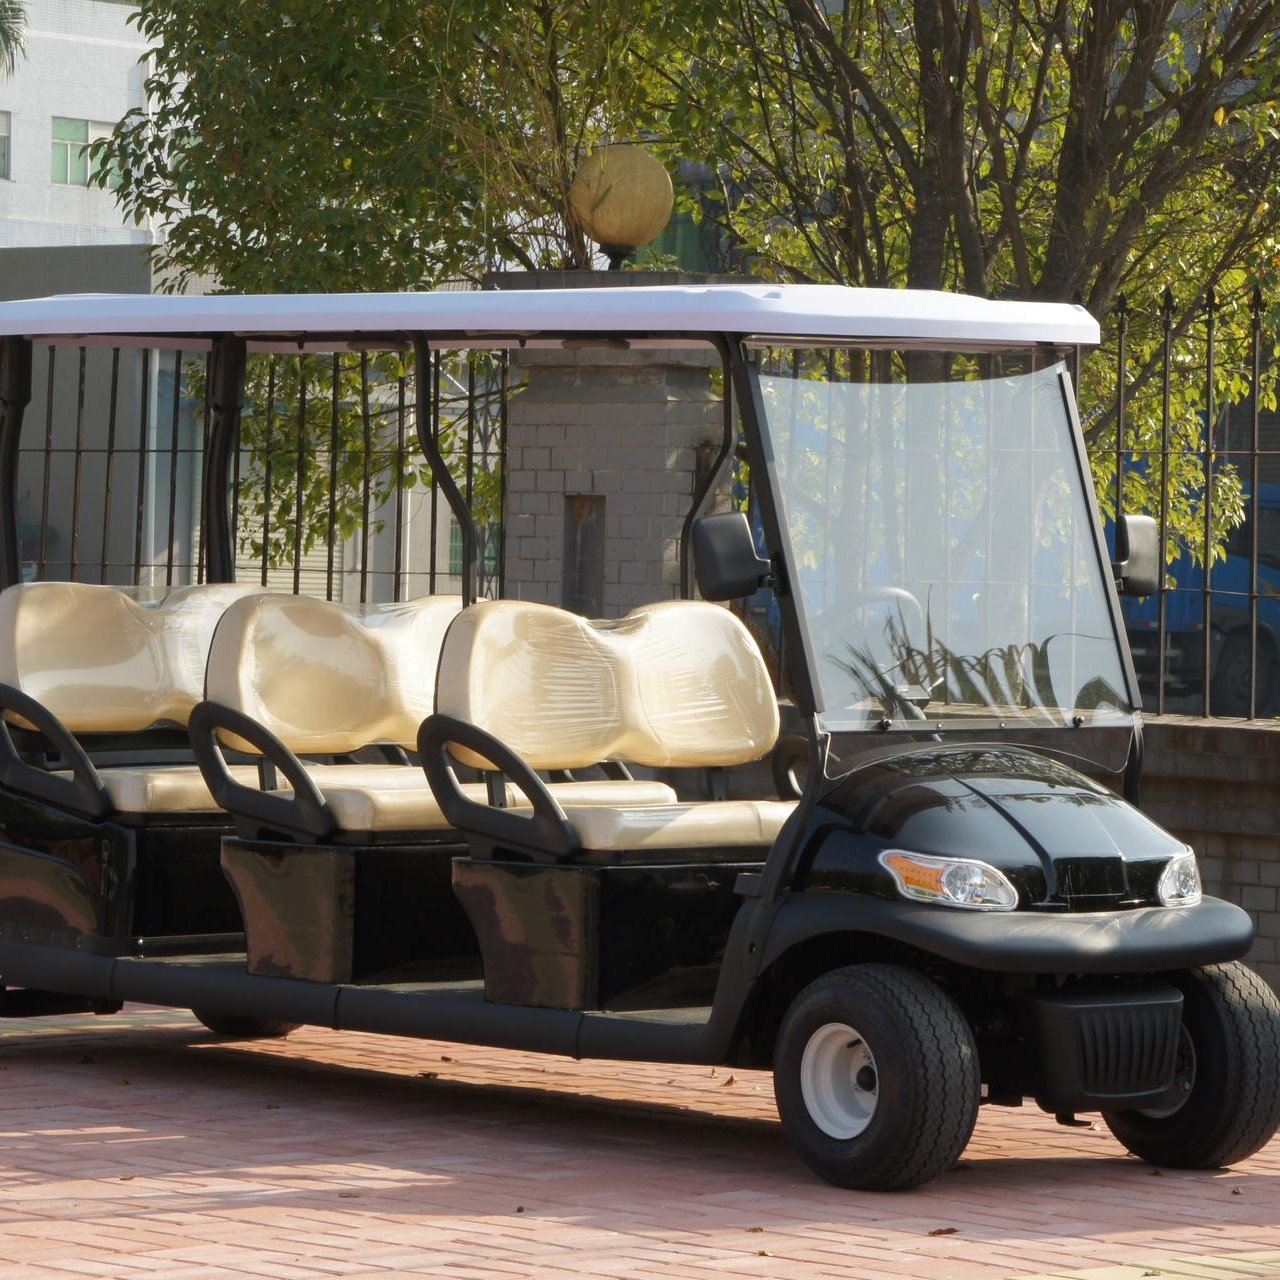 新款 电动高尔夫球车 景区旅游 高尔夫观光车 鸿畅达 6座 电动观光车价格 厂家直销